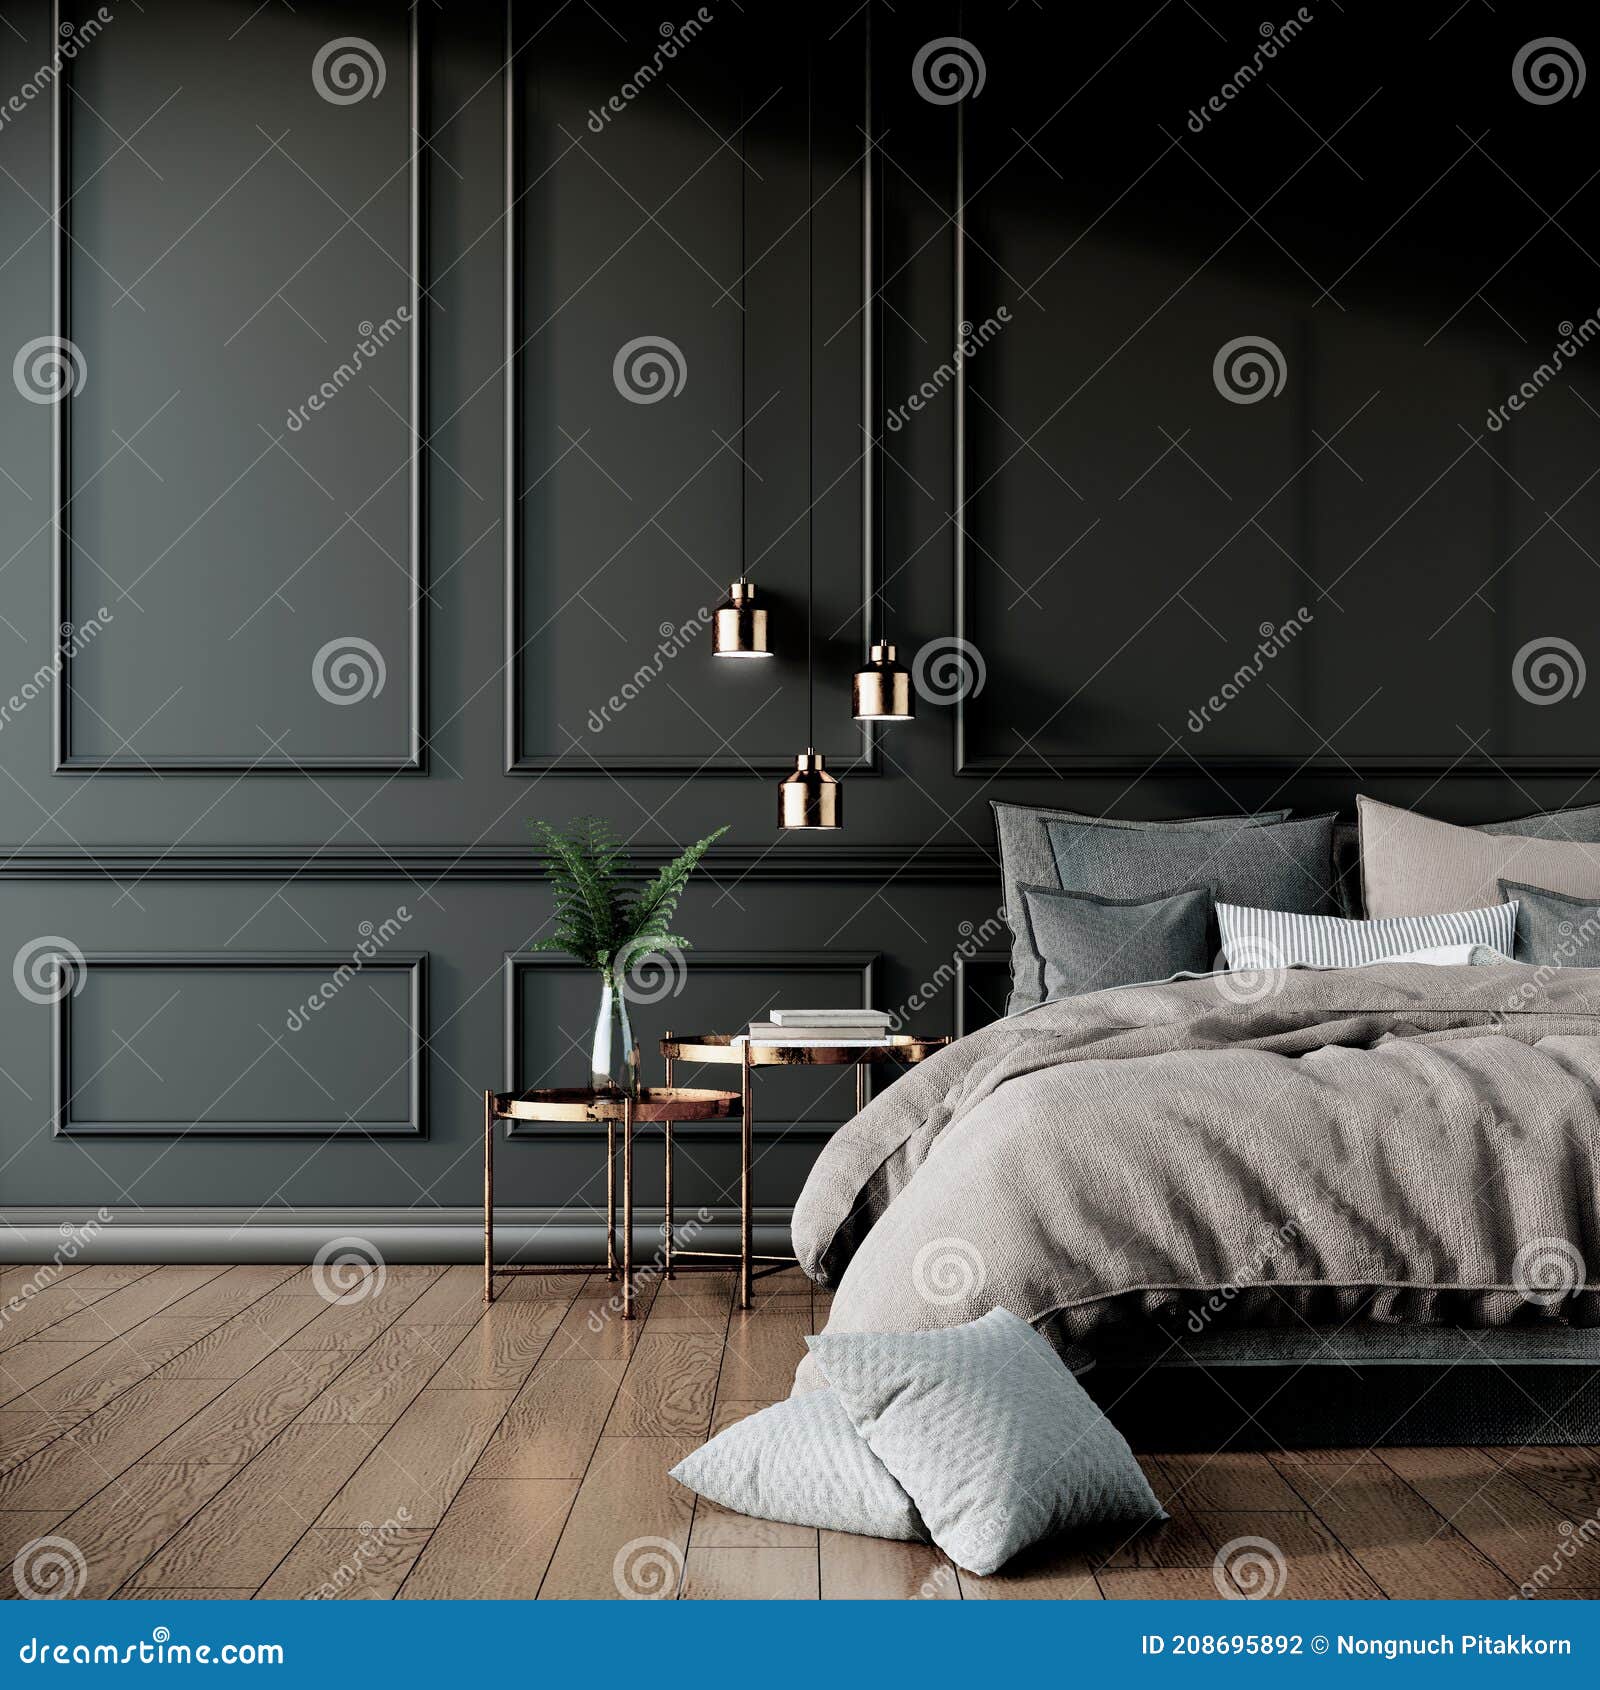 Không gian phòng ngủ hiện đại màu đen mang lại cho bạn cảm giác đẳng cấp và tràn đầy năng lượng. Được trang bị các thiết bị tiên tiến, phòng ngủ này sẽ đem đến cho bạn những giấc ngủ ngon lành và thật sảng khoái. Hãy click vào hình ảnh để khám phá thêm về thiết kế phòng ngủ tuyệt vời này nhé!